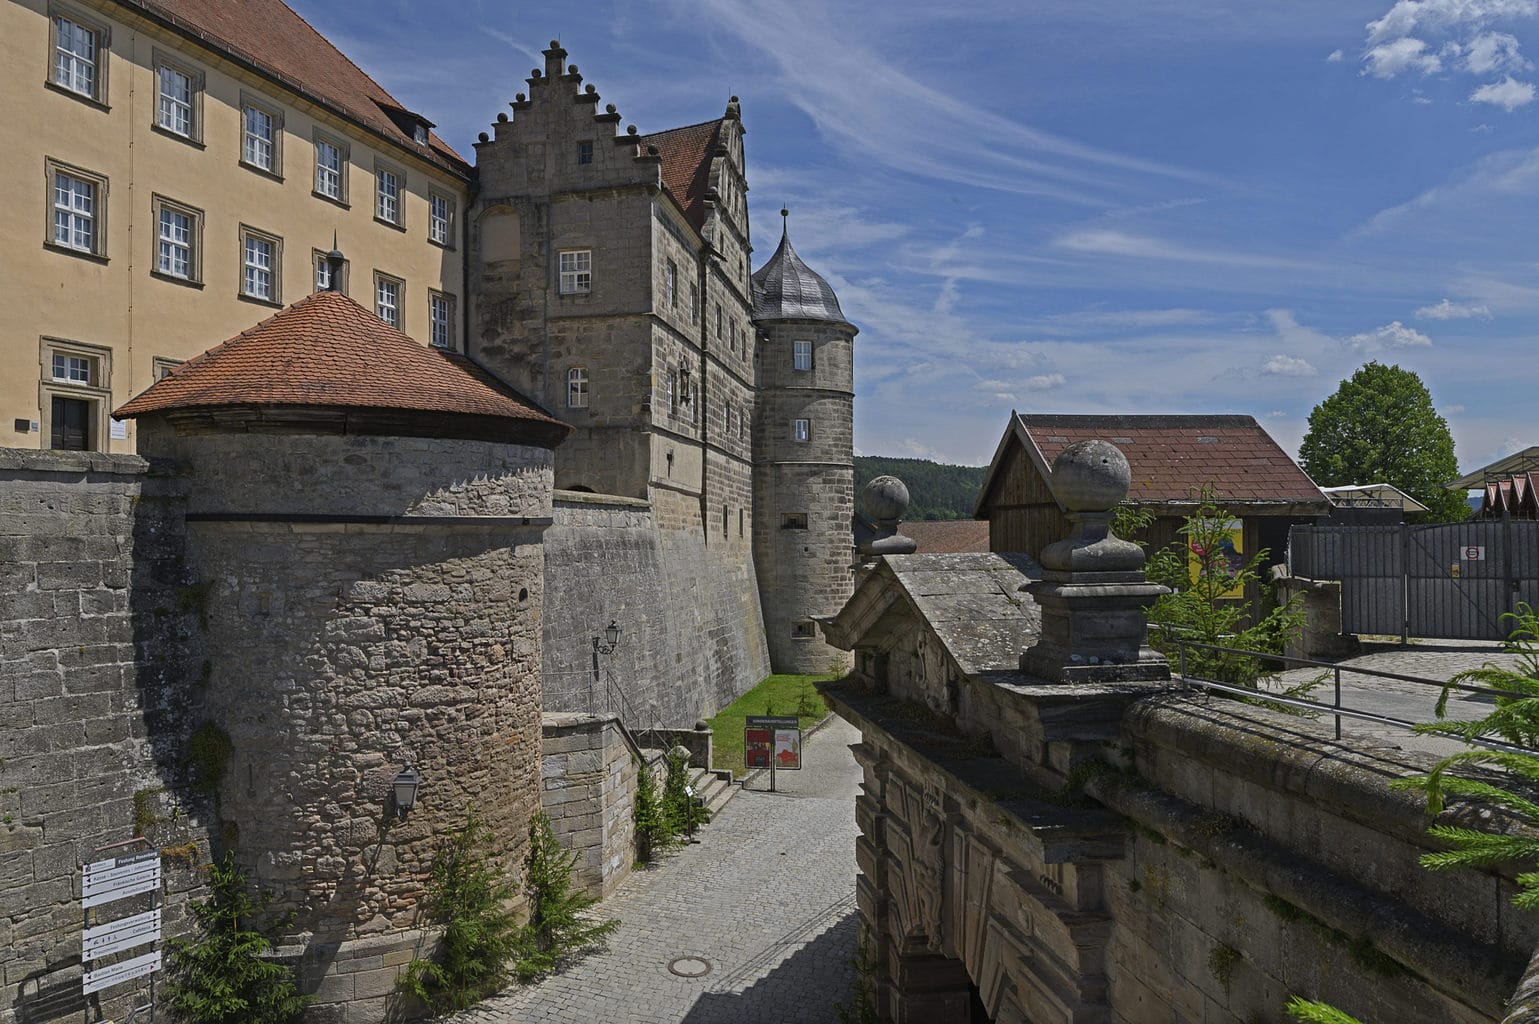 De vesting Rosenberg in het Duitse stadje Kronach maakt deel uit van de Duitse Burgenstrasse of terwijl Duitse kastelenroute